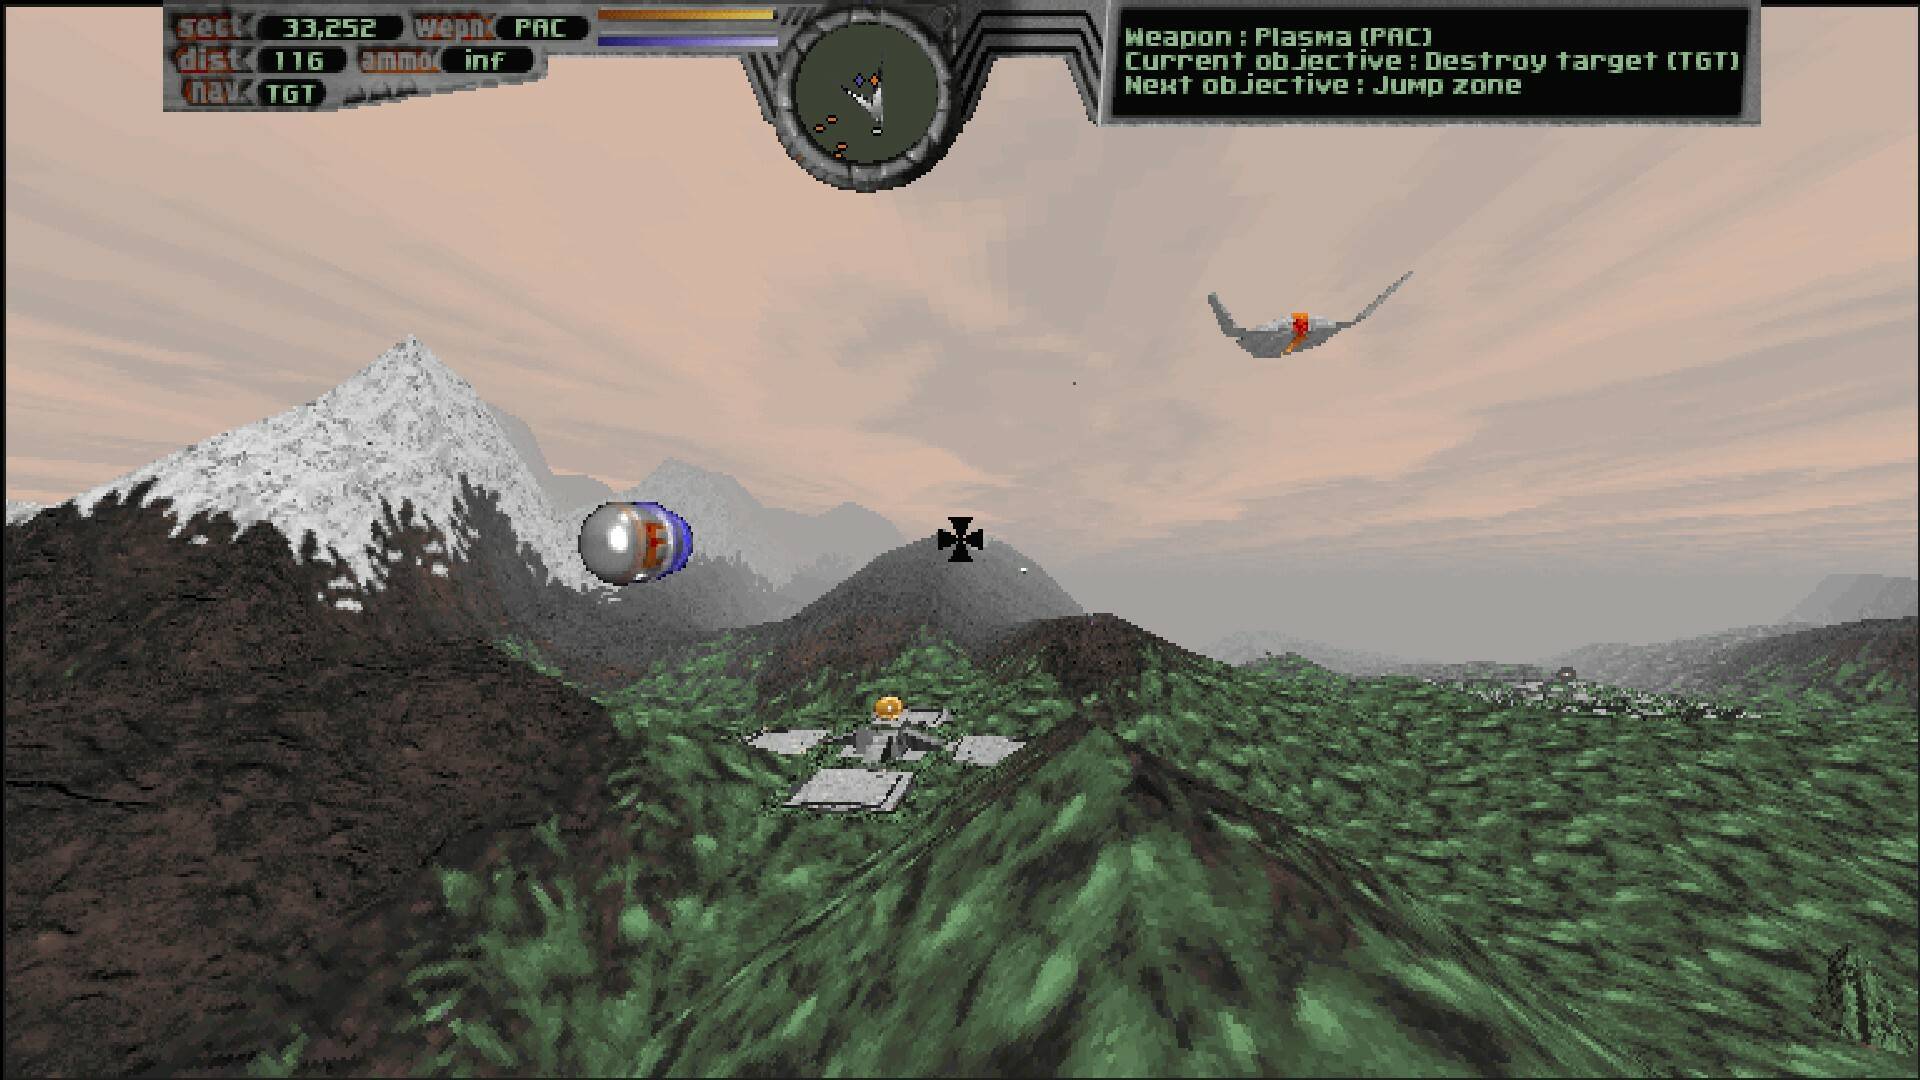 飞行模拟器游戏推荐苹果版:29年前的经典飞行模拟游戏《终极速度》即将推出增强版-第2张图片-太平洋在线下载